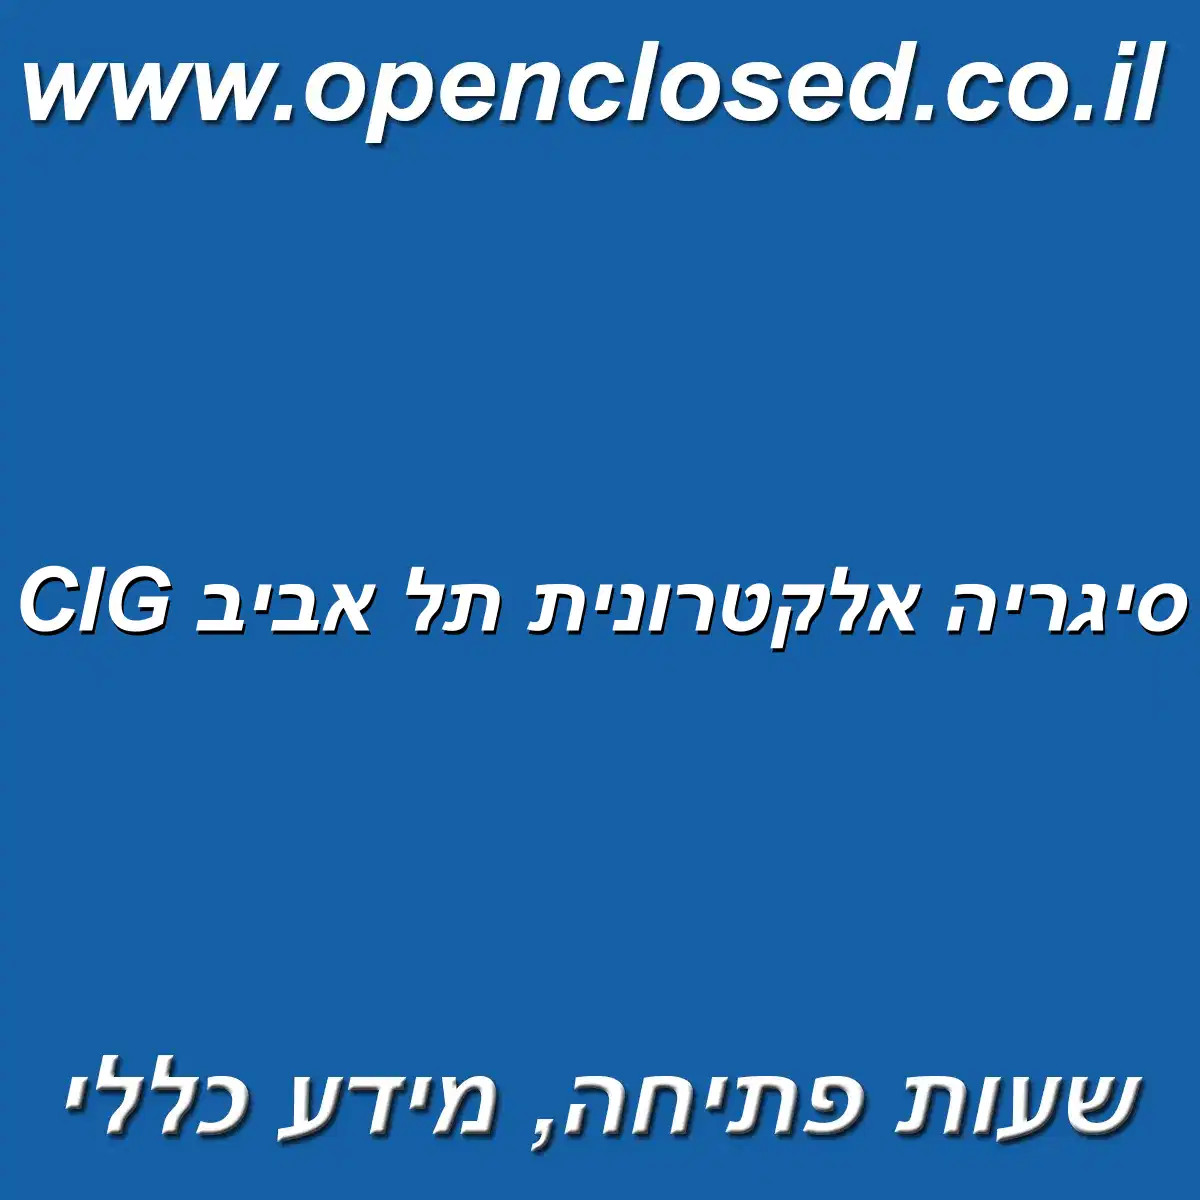 CIG סיגריה אלקטרונית תל אביב